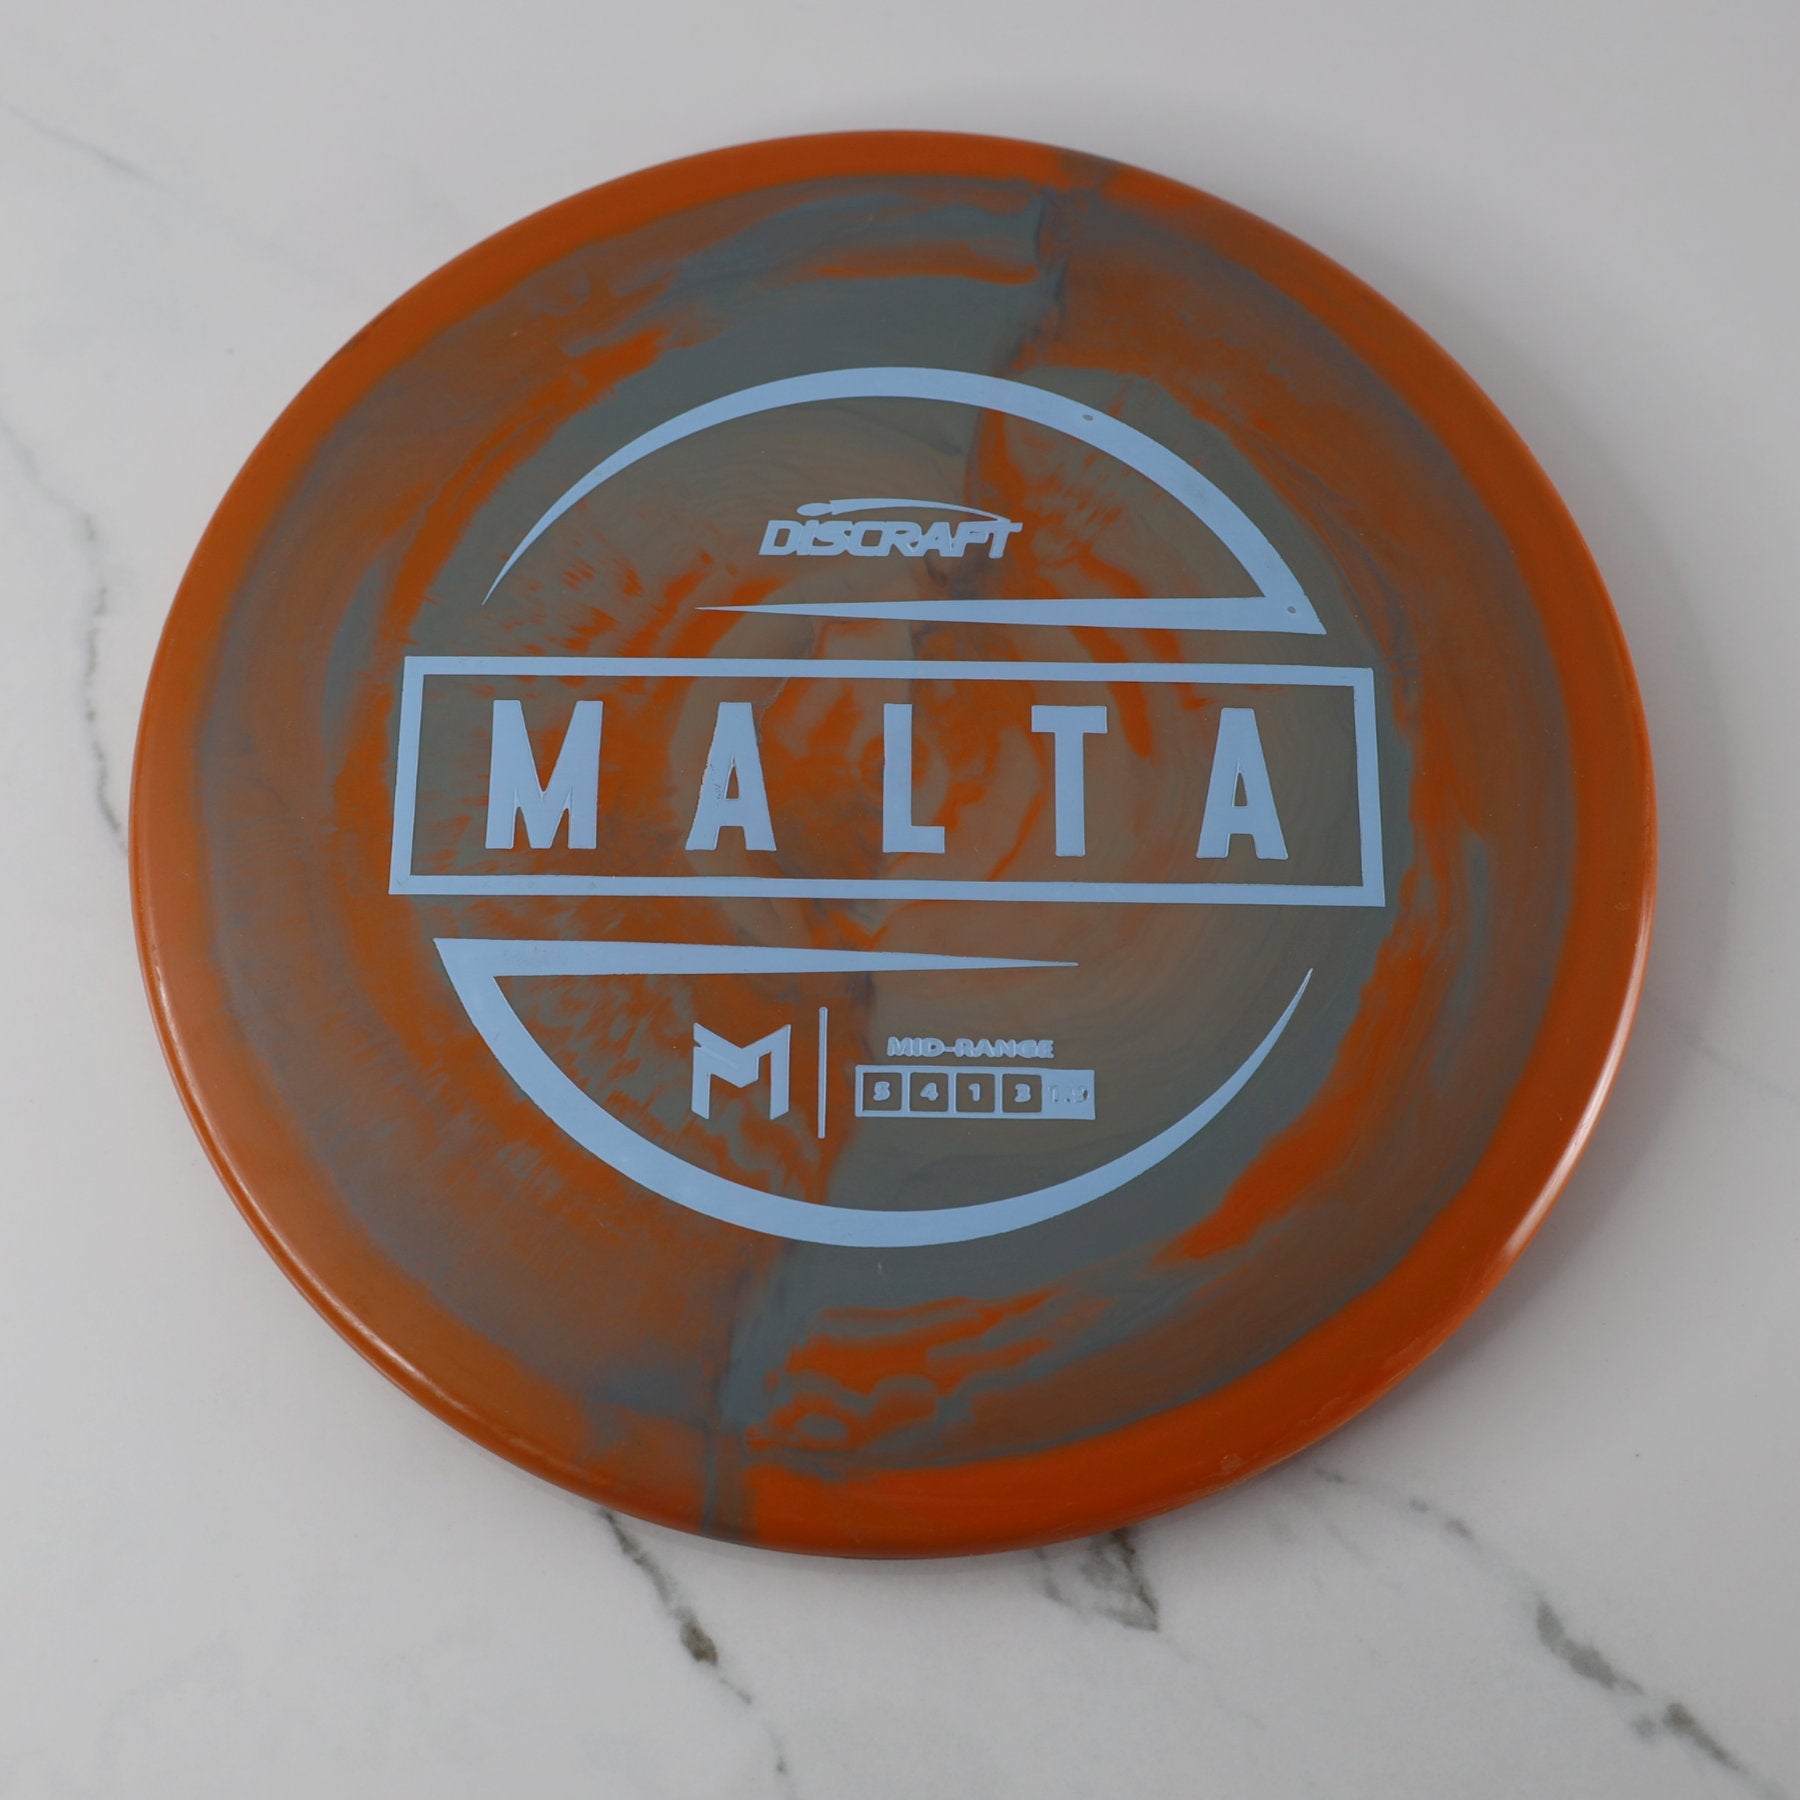 Used Discraft ESP Malta